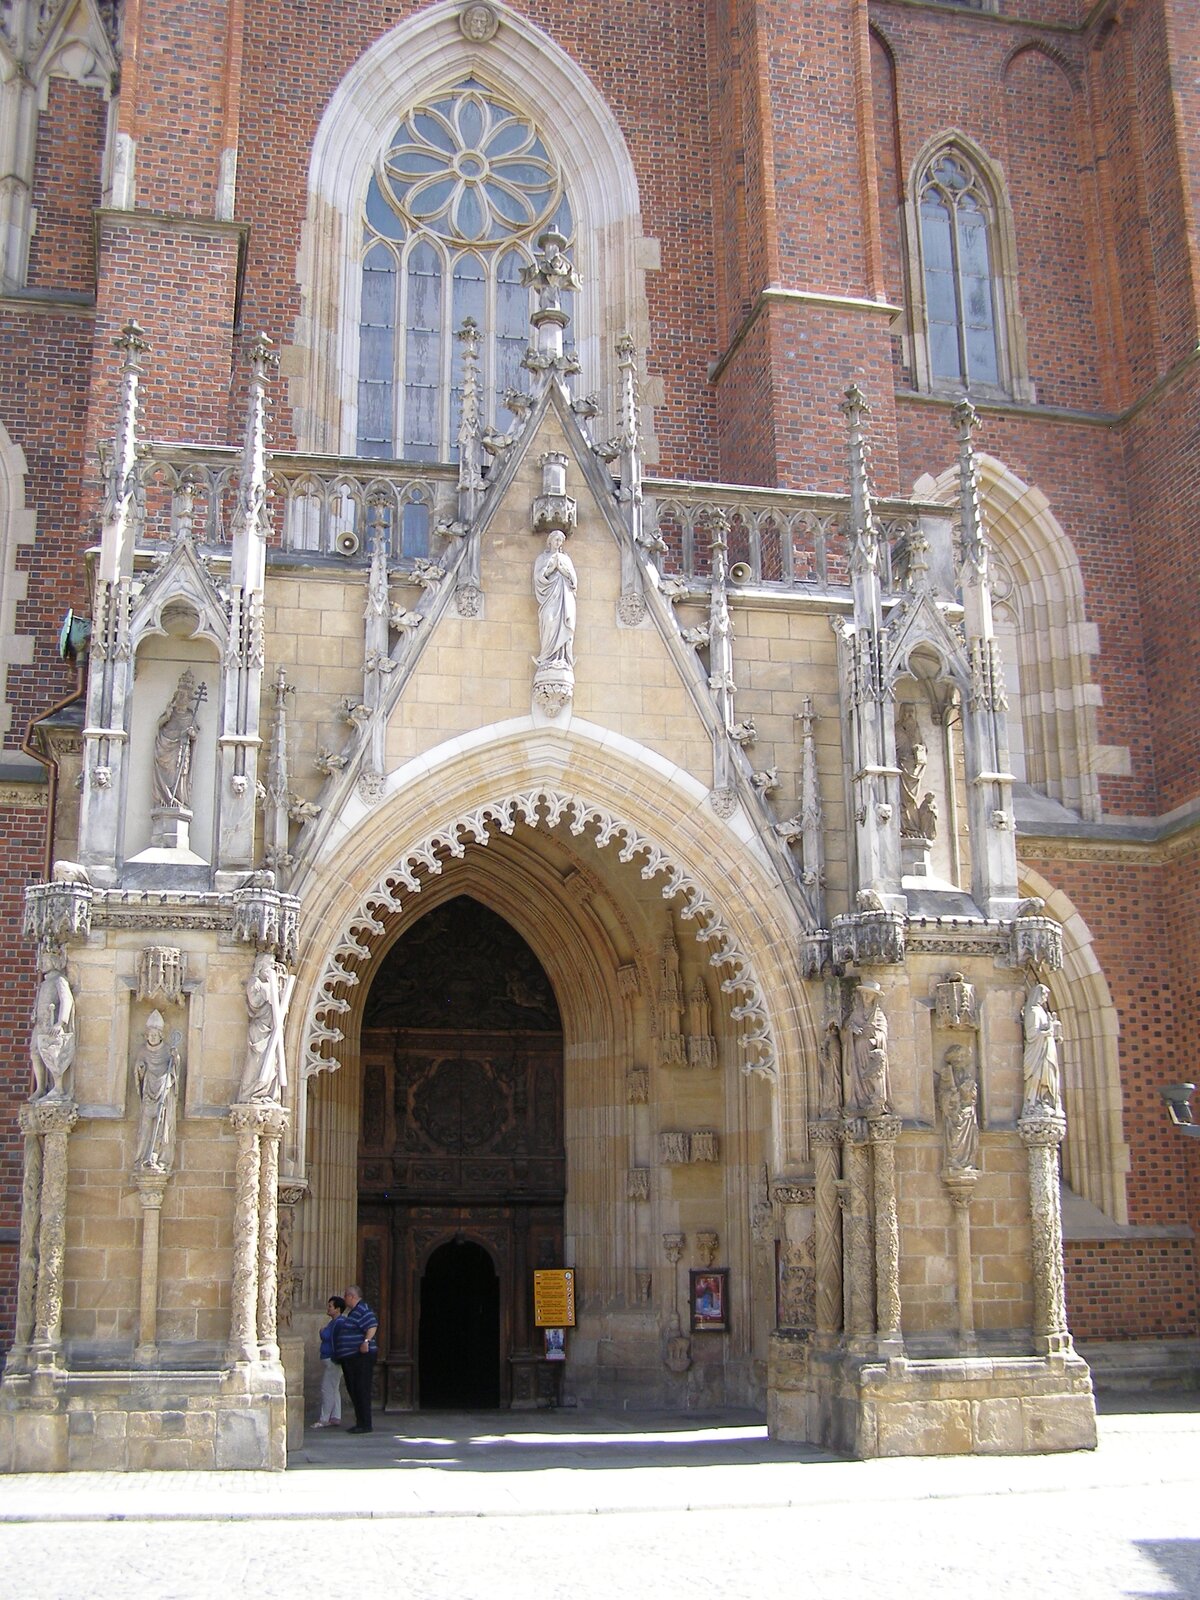 Ilustracja przedstawia wejście główne do katedry św. Jana Chrzciciela we Wrocławiu. Portal ten zawiera ozdobne wieżyczki oraz przedstawienia postaci. Sam portal jest dużo większy od wejścia do świątyni. Przy drzwiach do kościoła widoczni są turyści.